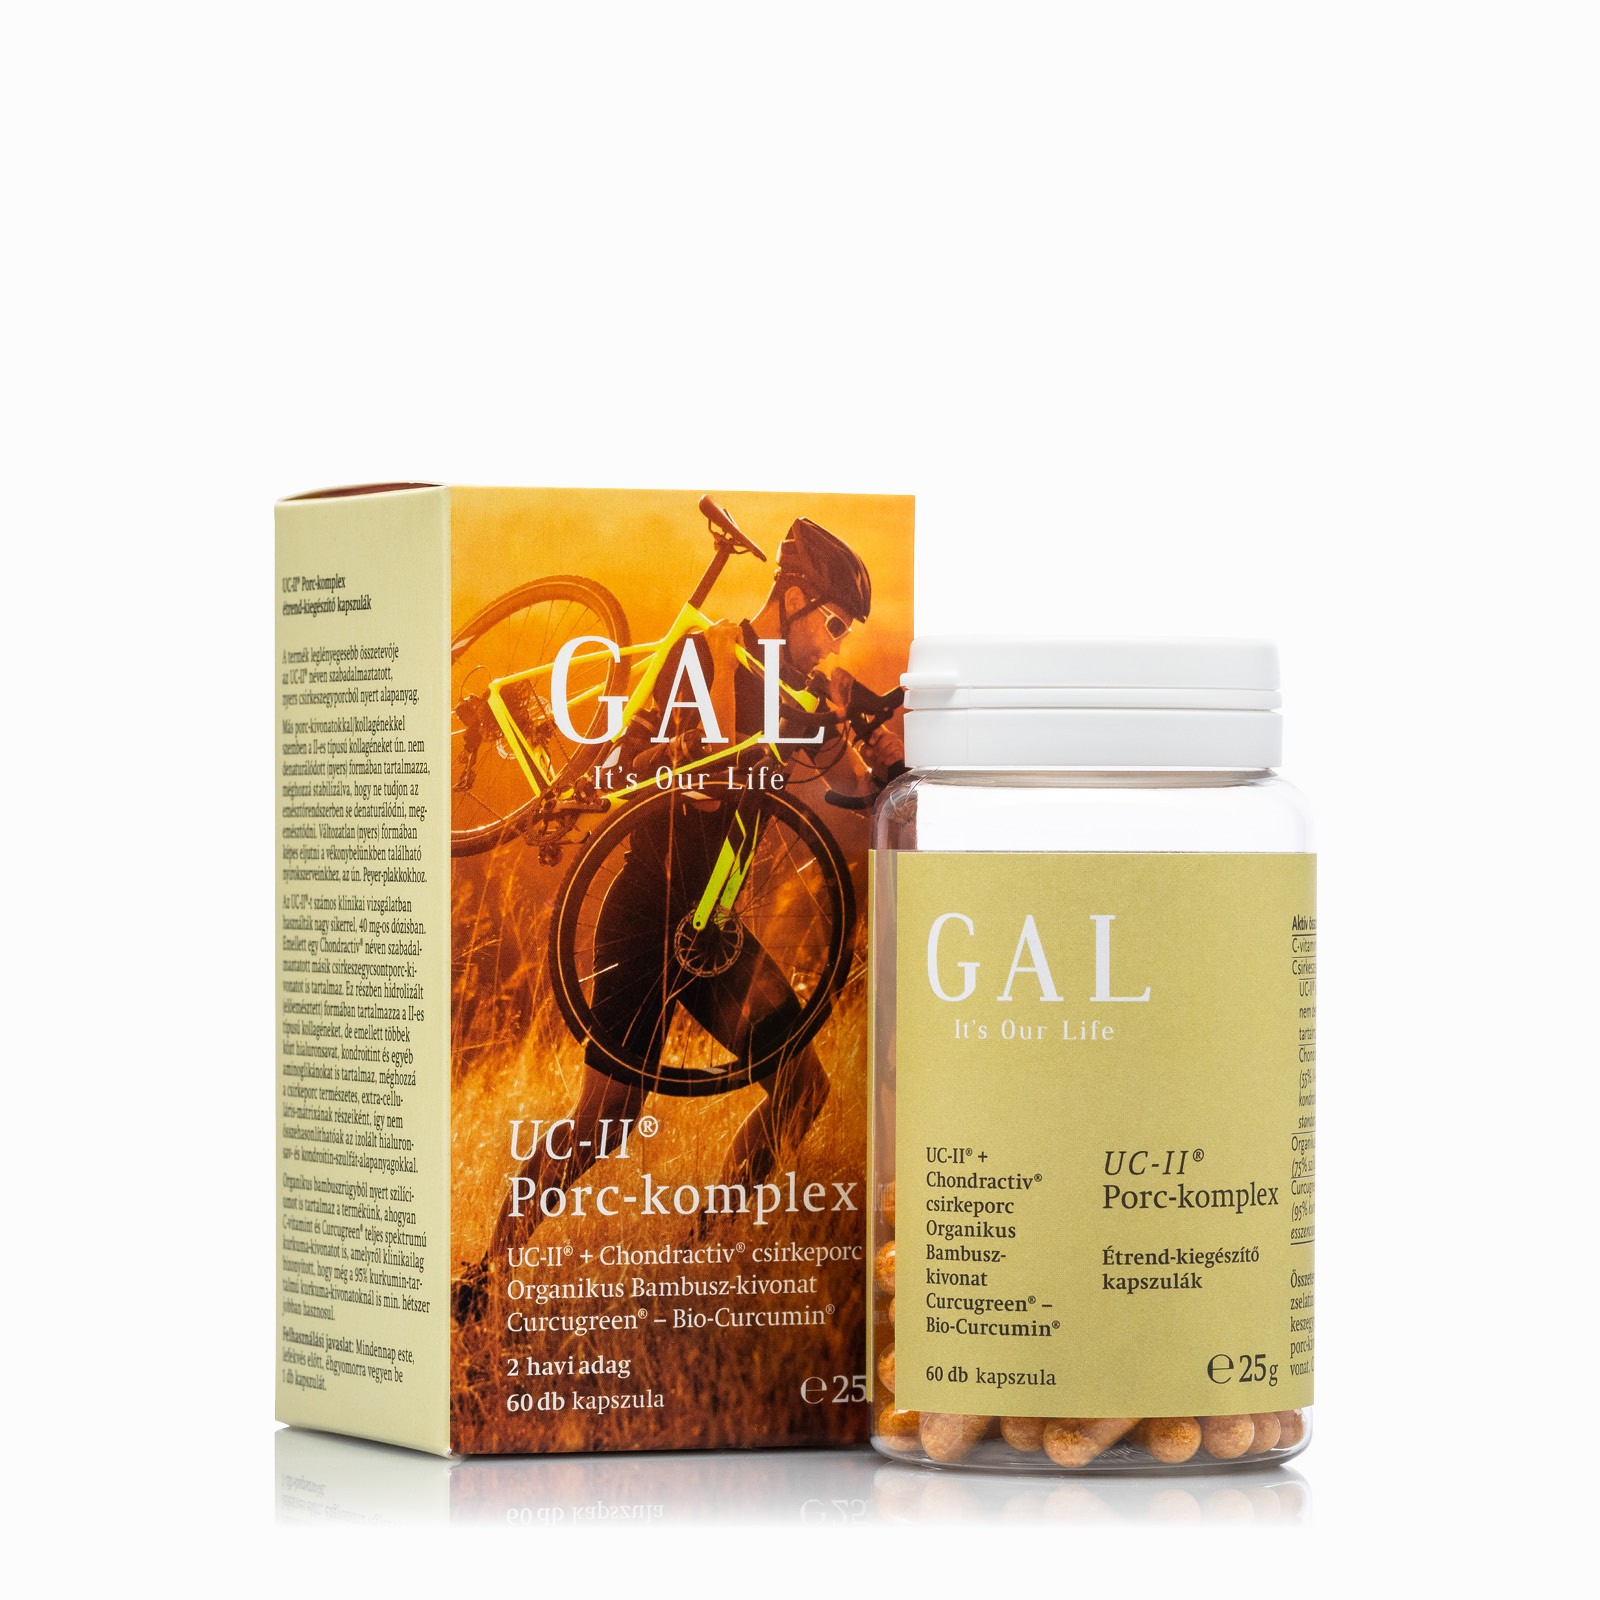 Gal termékek: Gal sertéskollagén peptidek g ára: